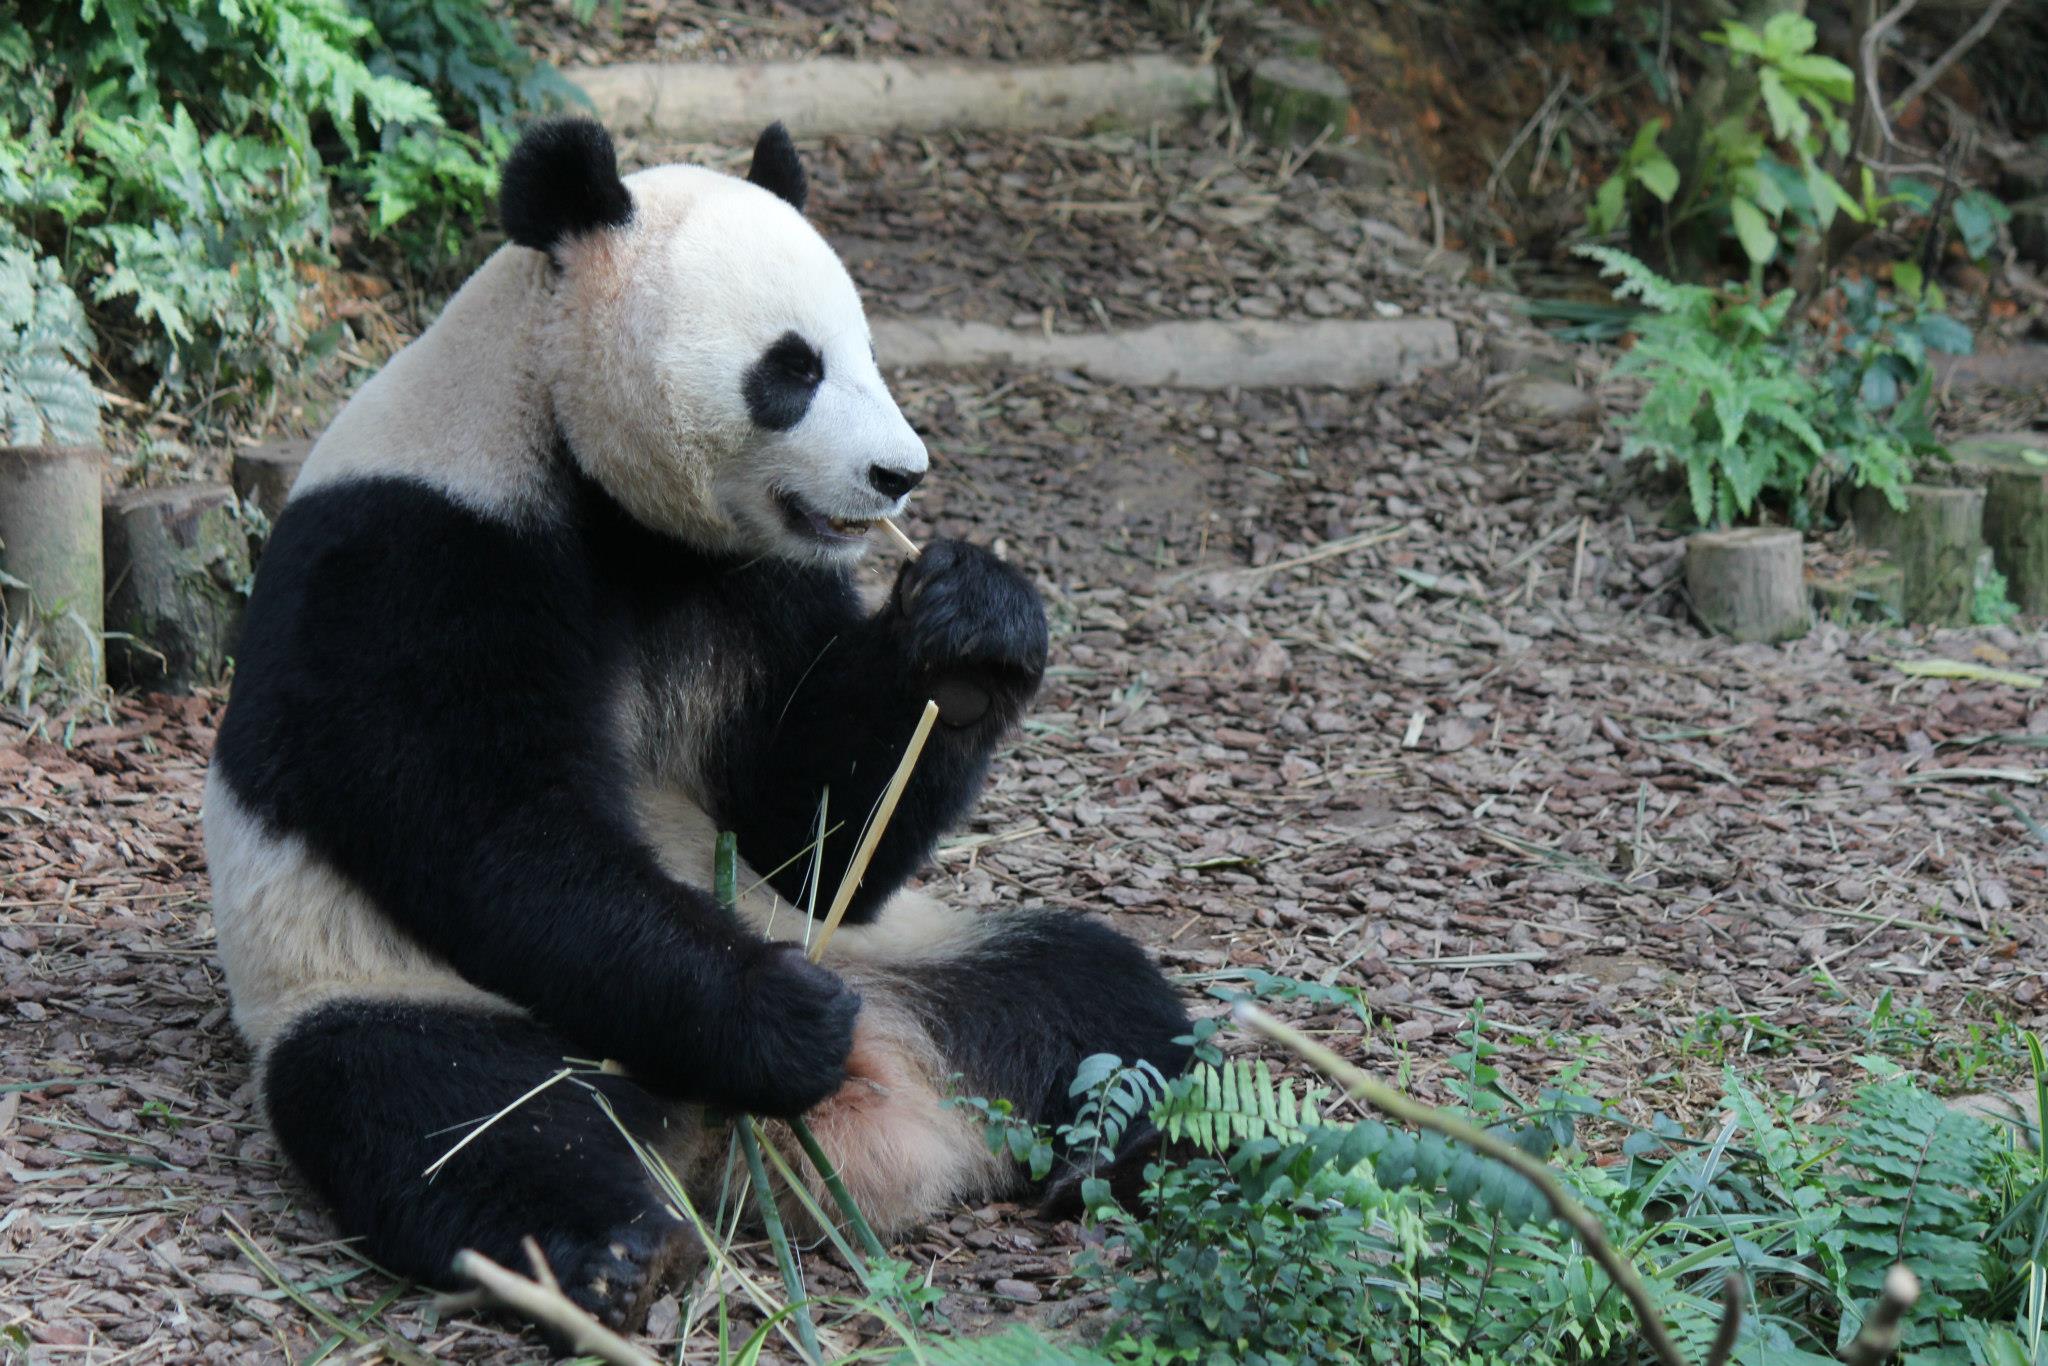 Pandas mating season